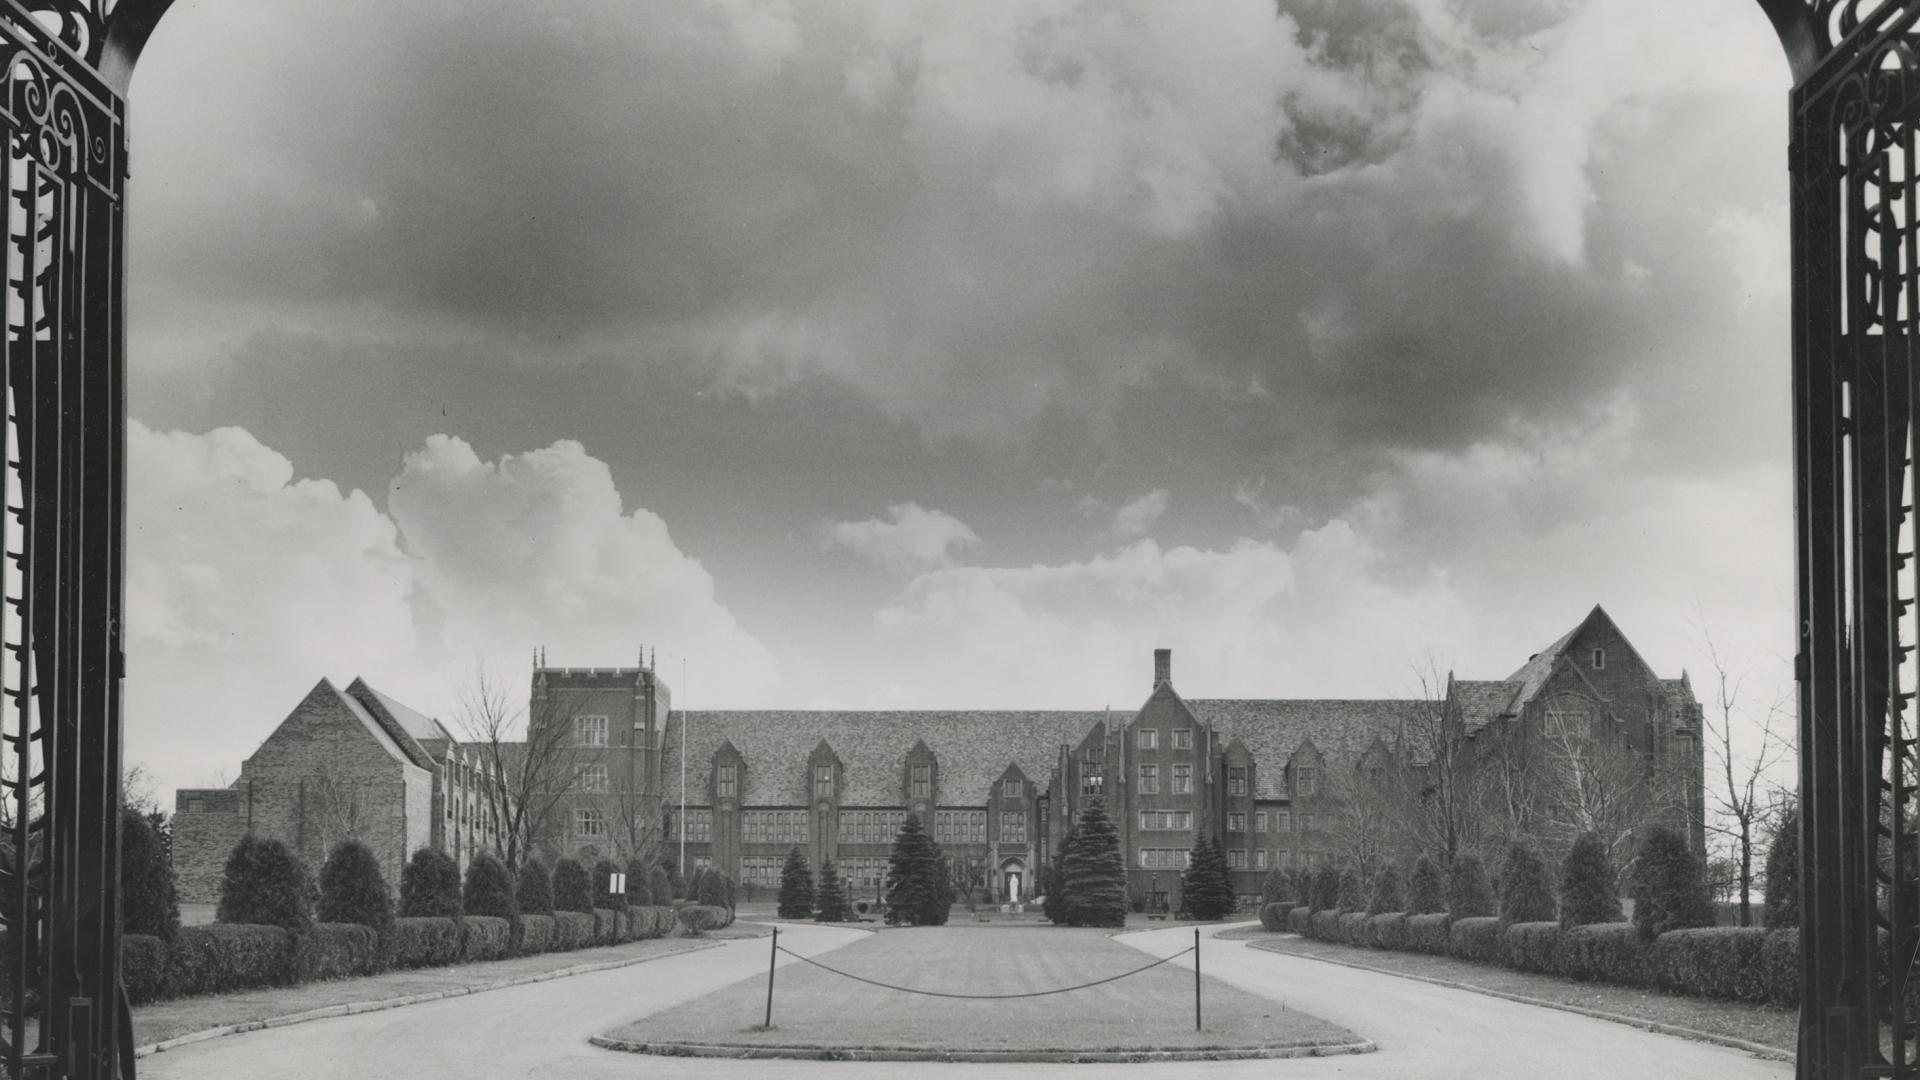 1959 view of campus through gates